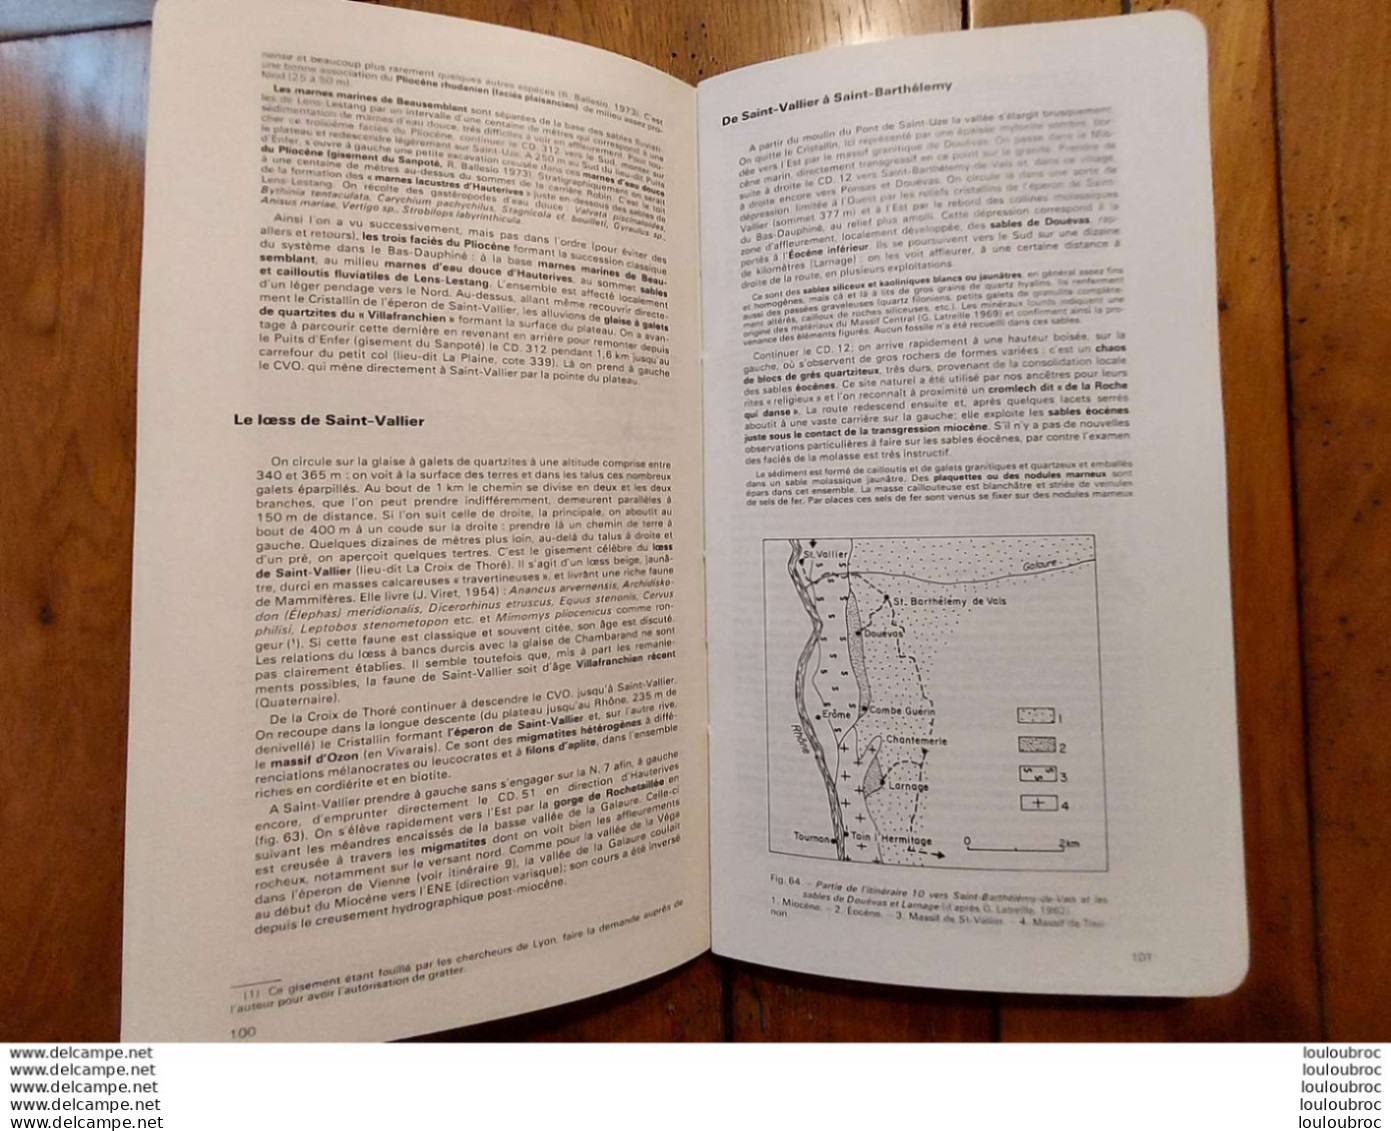 GUIDES GEOLOGIQUES REGIONAUX LYONNAIS VALLEE DU RHONE  1973  J. DEBELMAS  175  PAGES - Sciences